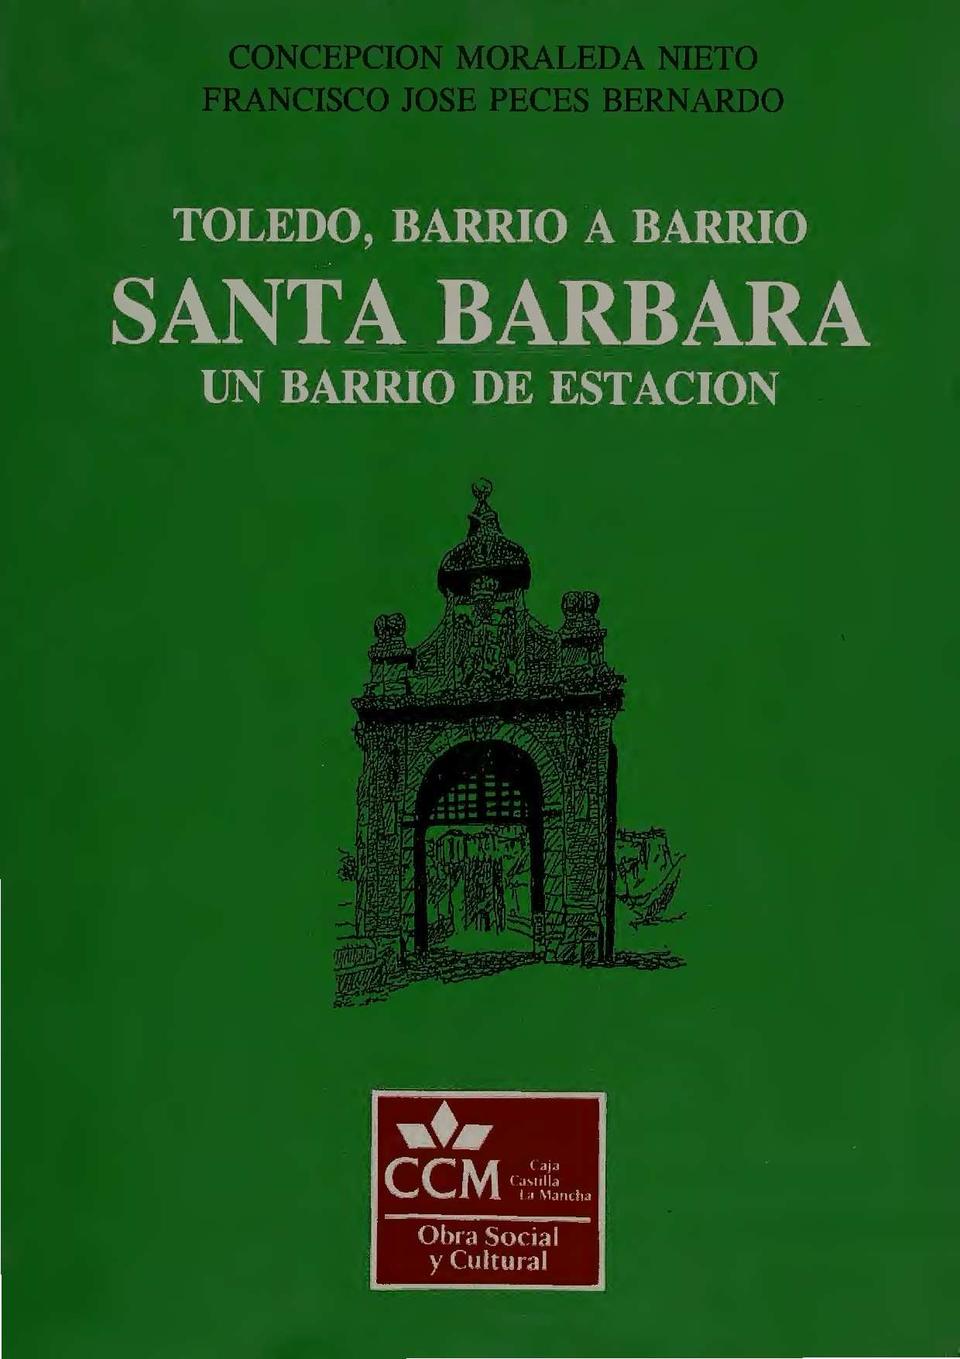 Toledo, barrio a barrio : Santa Bárbara. Un barrio de estación / Francisco José Peces Bernardo y Concepción Moraleda Nieto.-. [Monografía]